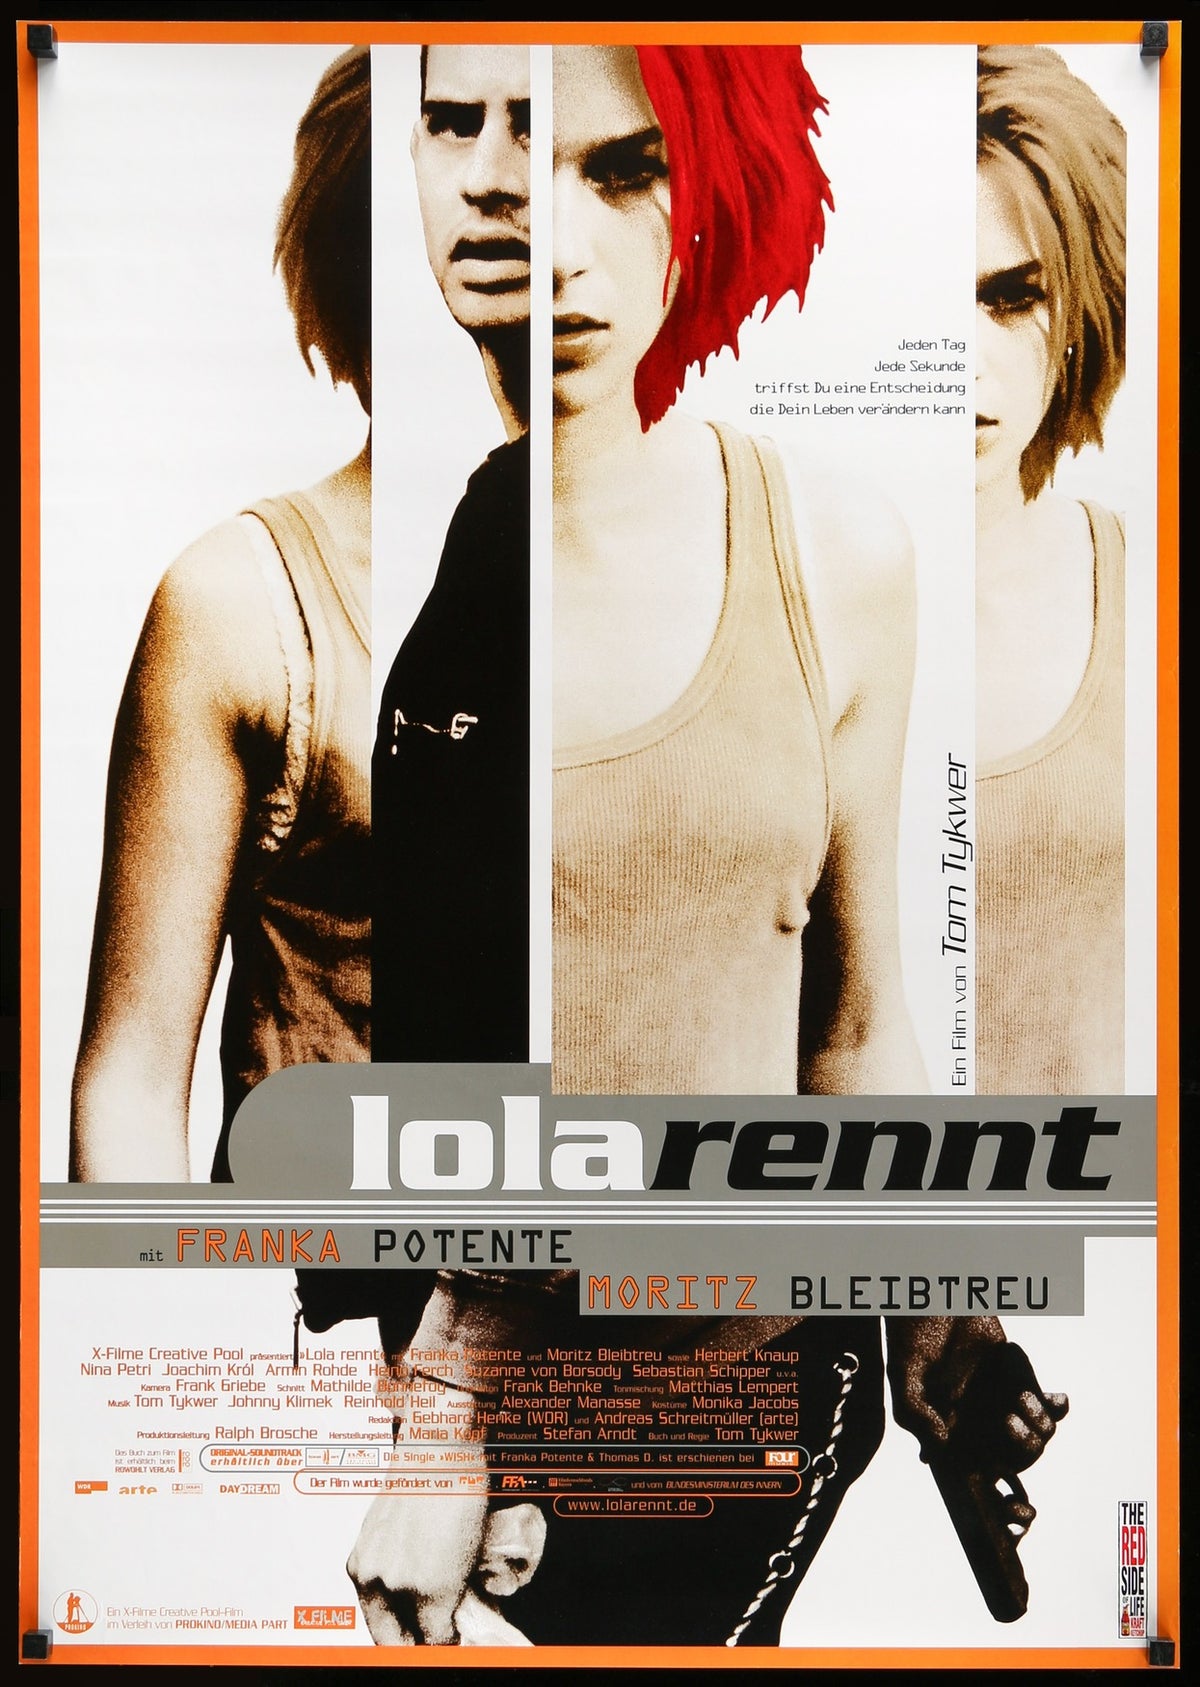 Run Lola Run (1998) original movie poster for sale at Original Film Art